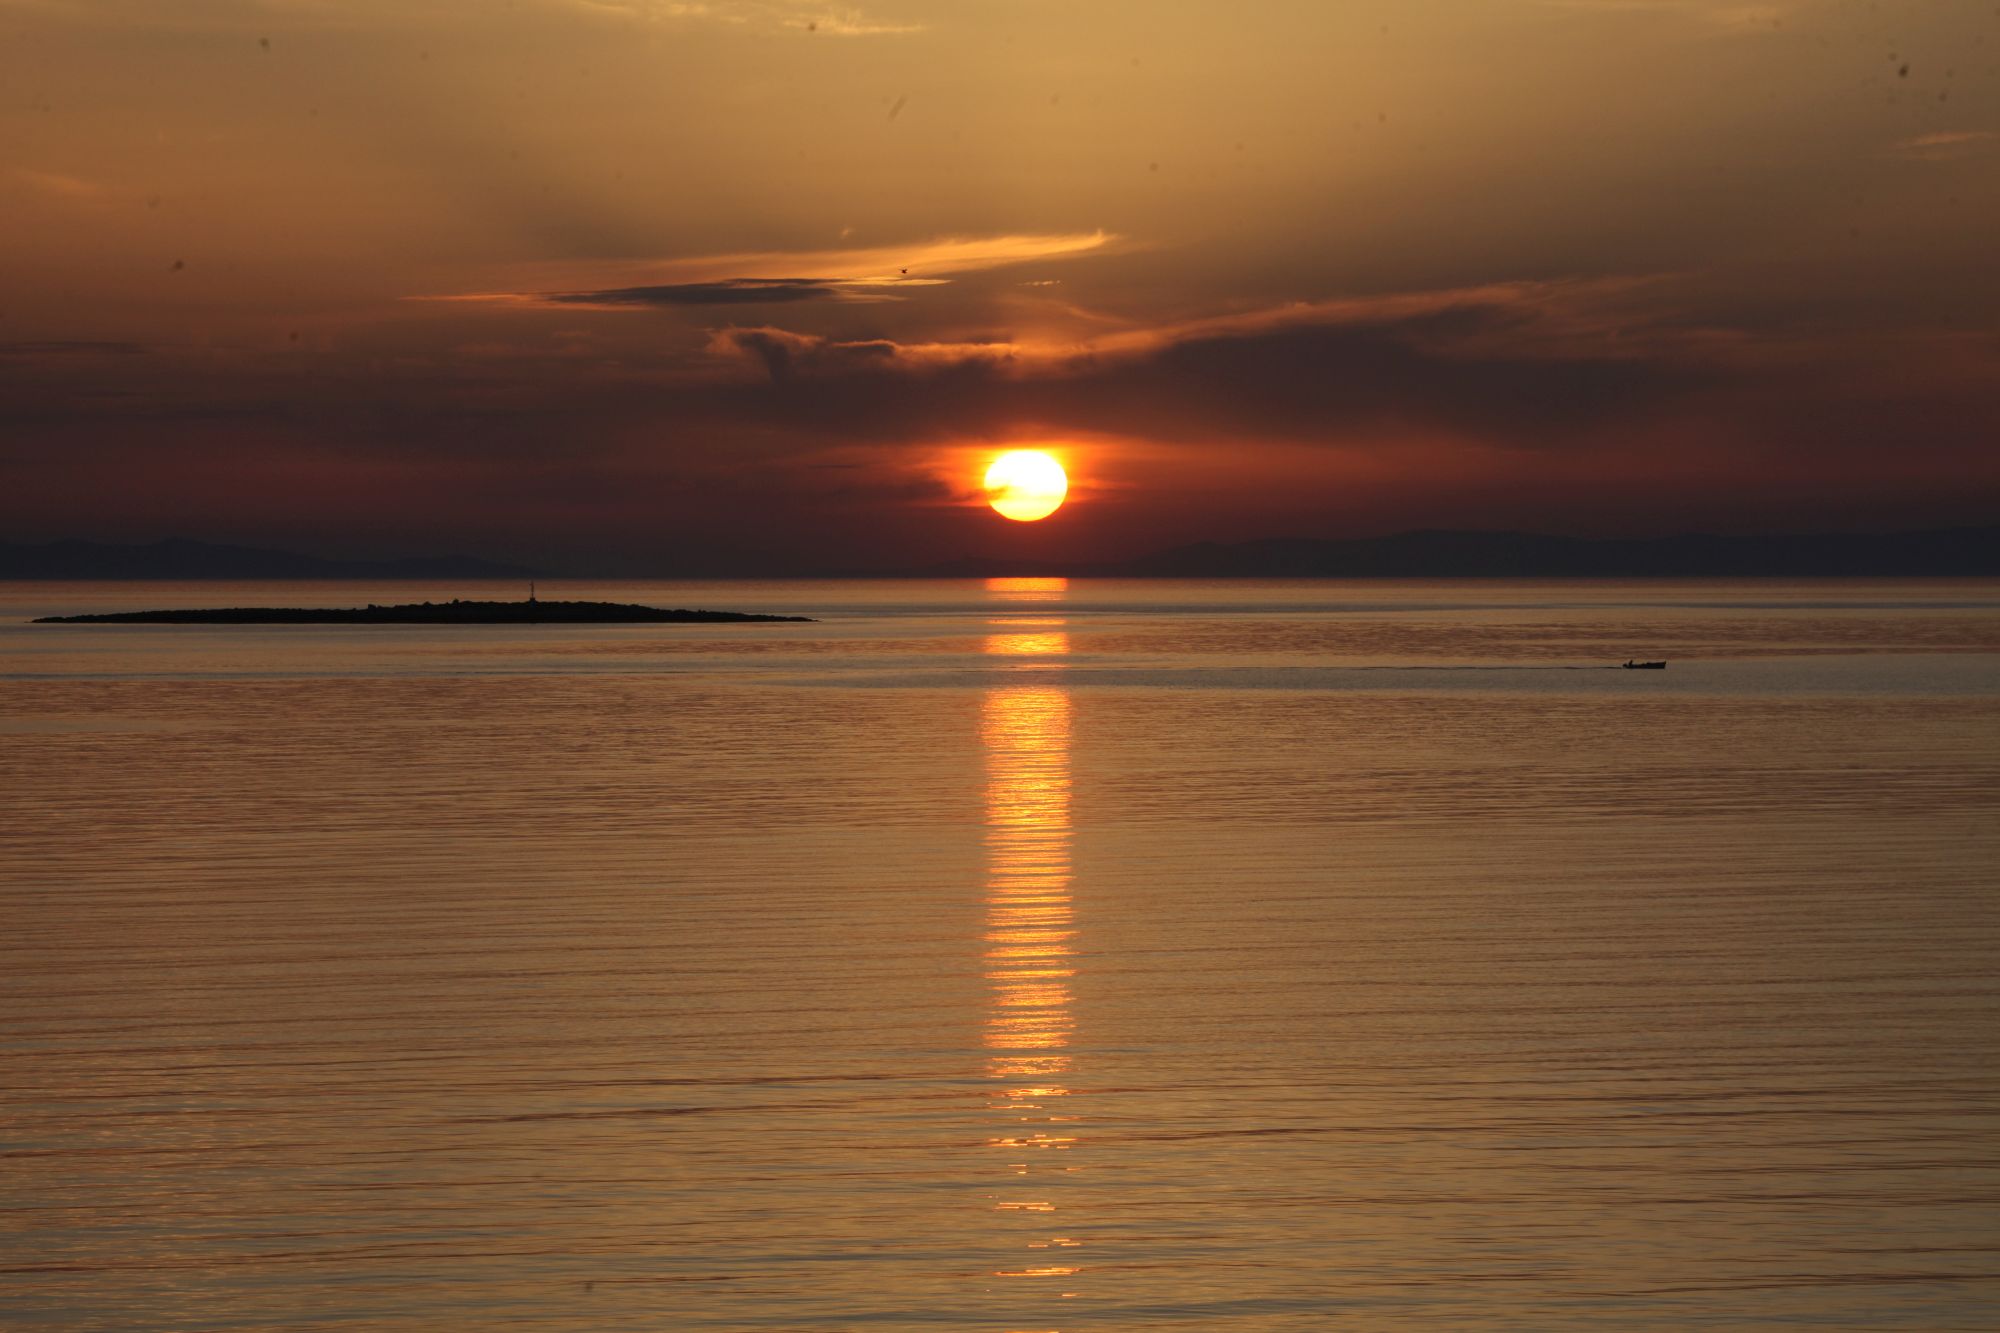 Γραφικό ηλιοβασίλεμα στην θάλασσα της Σύρου.